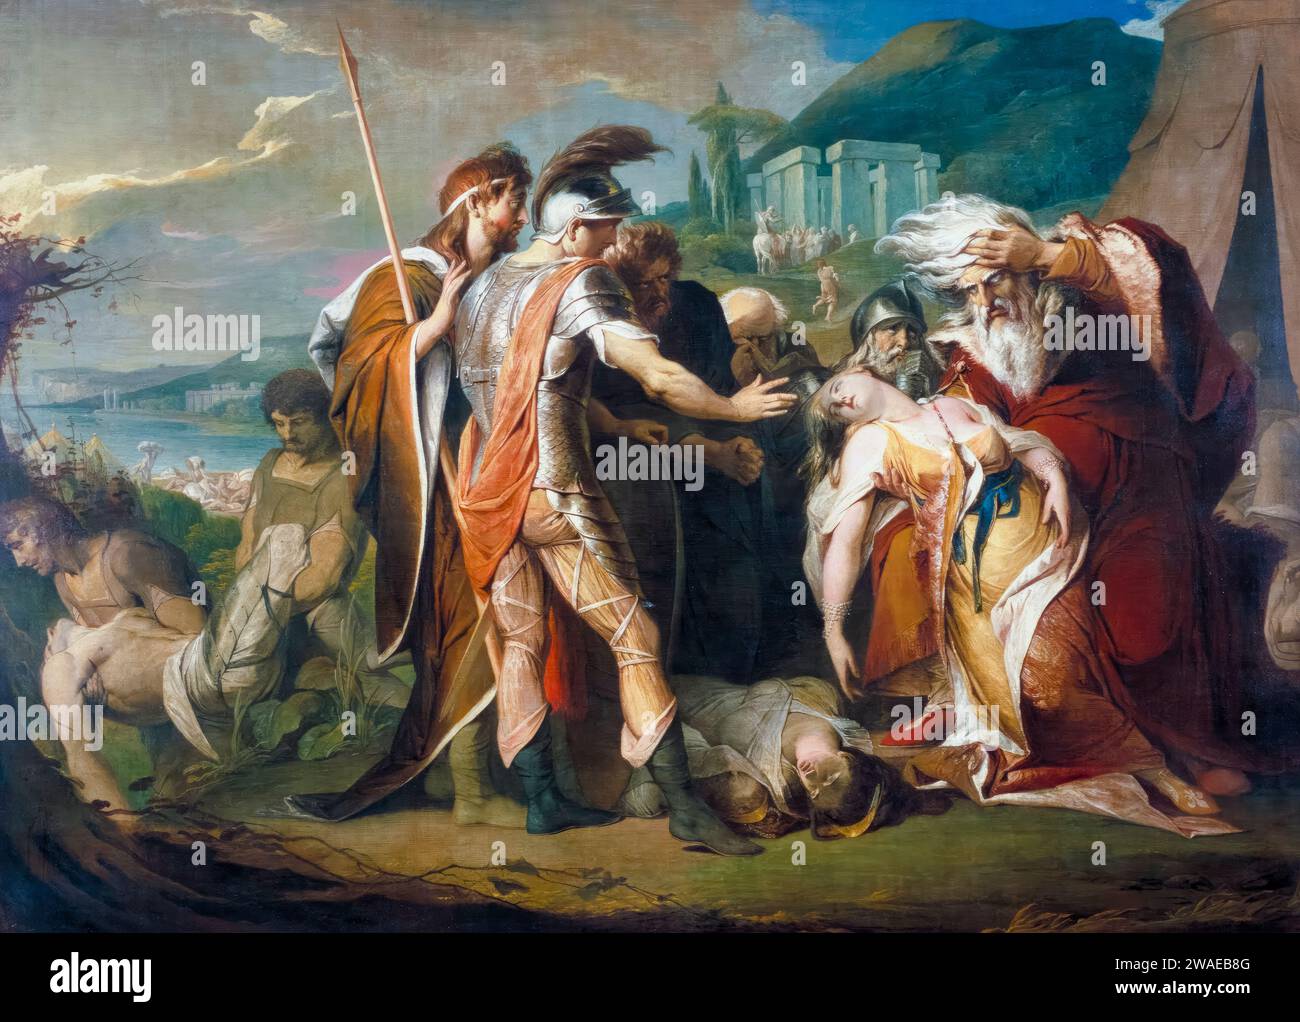 Le roi Lear pleurant sur le cadavre de Cordelia, peinture à l'huile sur toile de James Barry, vers 1786 Banque D'Images